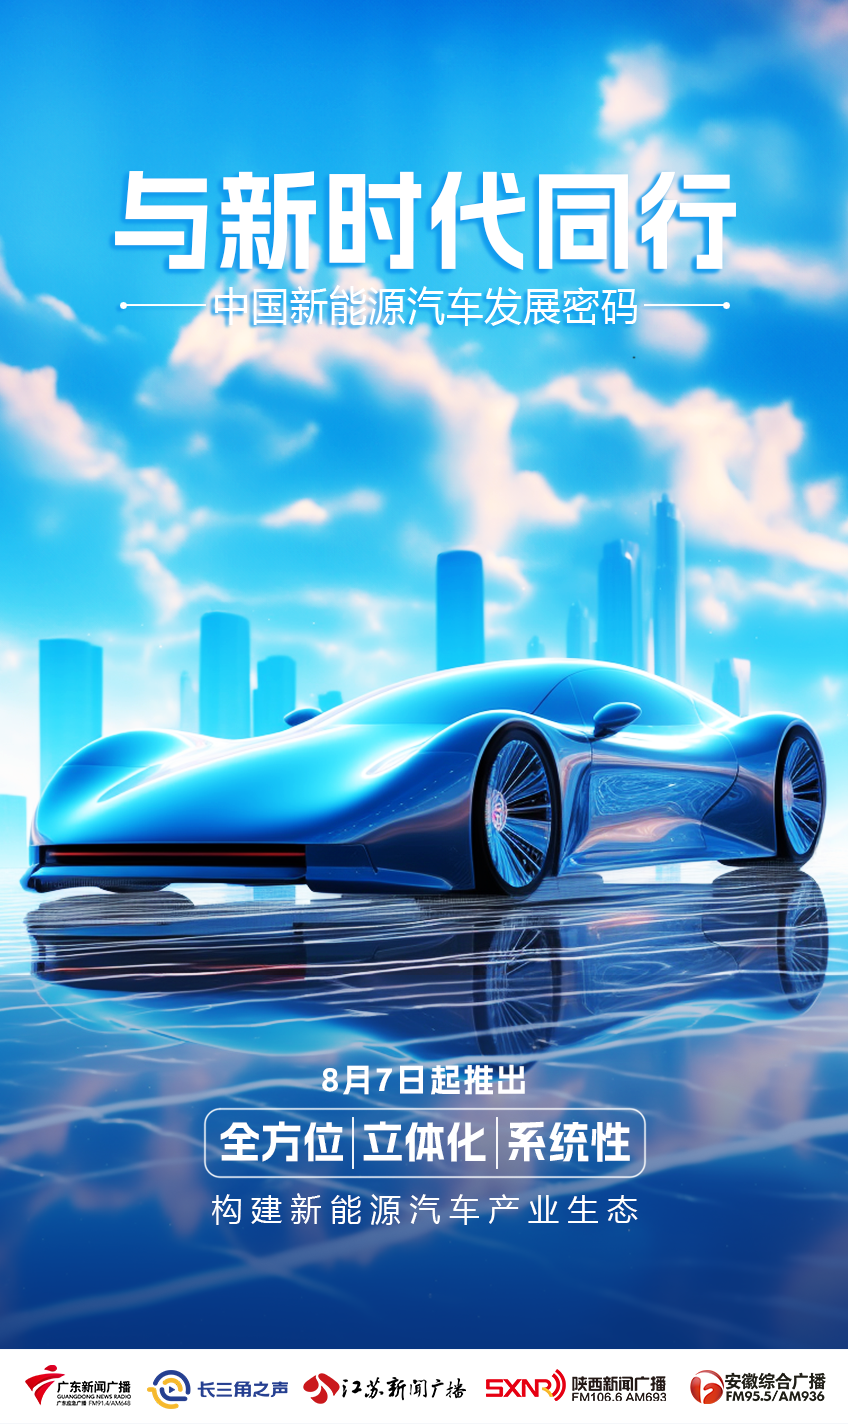 “上海制造”新能源汽车——迈向高端加速迈向新赛道